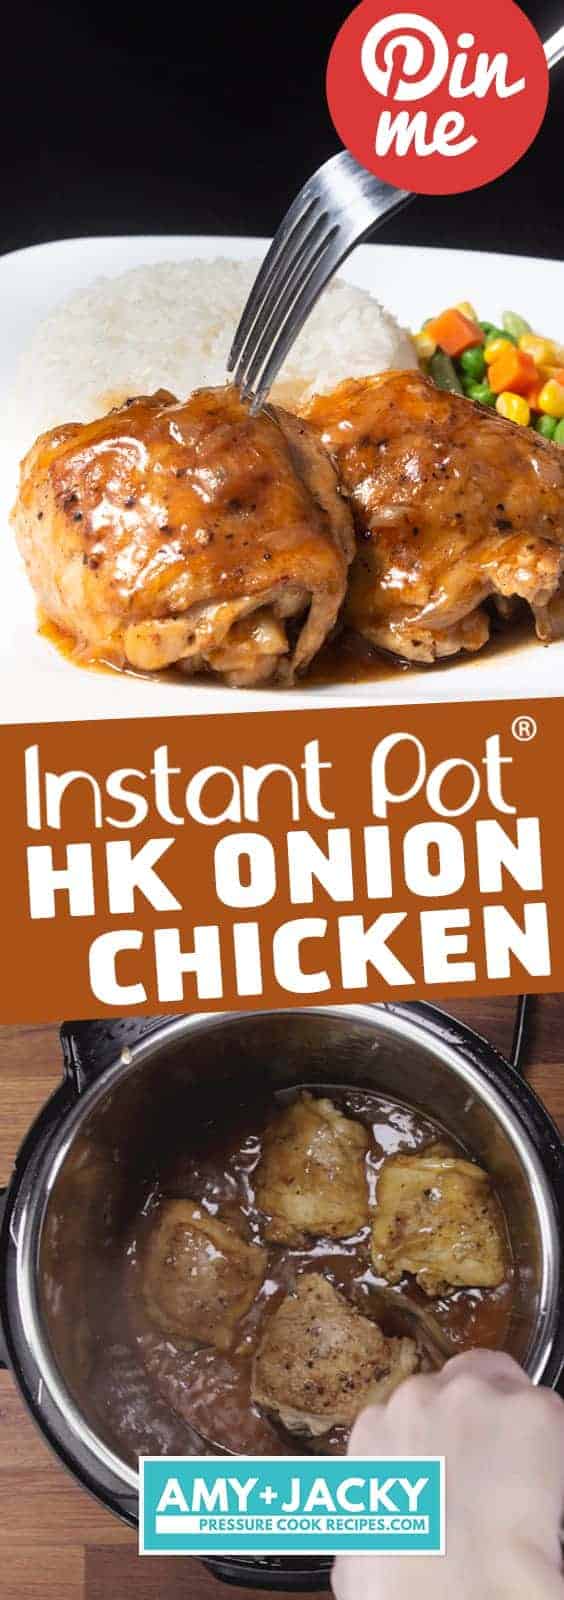 Instant Pot HK Onion Chicken | Instant Pot Onion Chicken | Instant Pot Chicken | Pressure Cooker Onion Chicken | Pressure Cooker Chicken | Instant Pot Recipes | Pressure Cooker Recipes #instantpot #pressurecooker #recipes #easy #chicken #chineserecipes